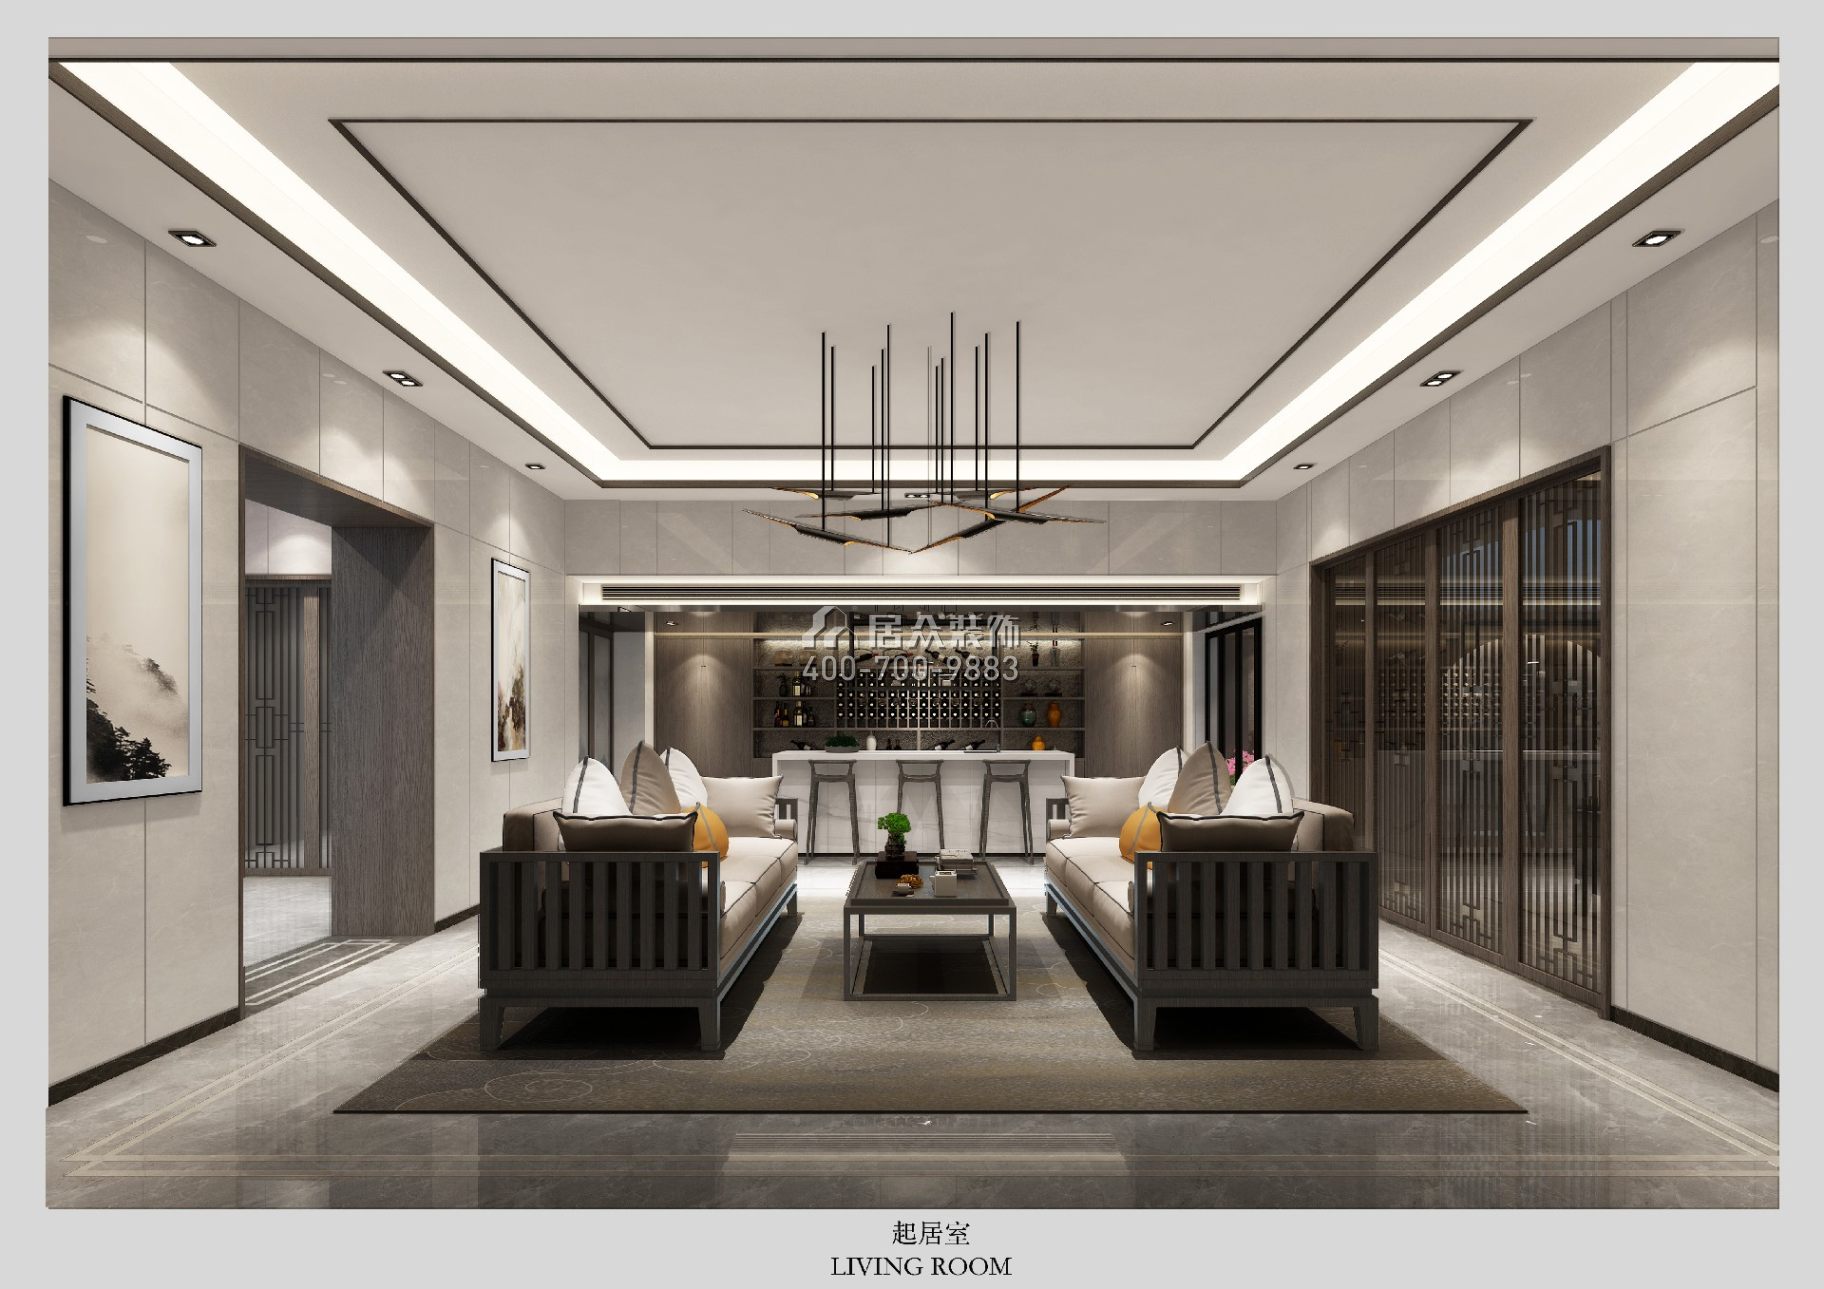 萬科棠樾悅水莊986平方米現代簡約風格別墅戶型客廳裝修效果圖